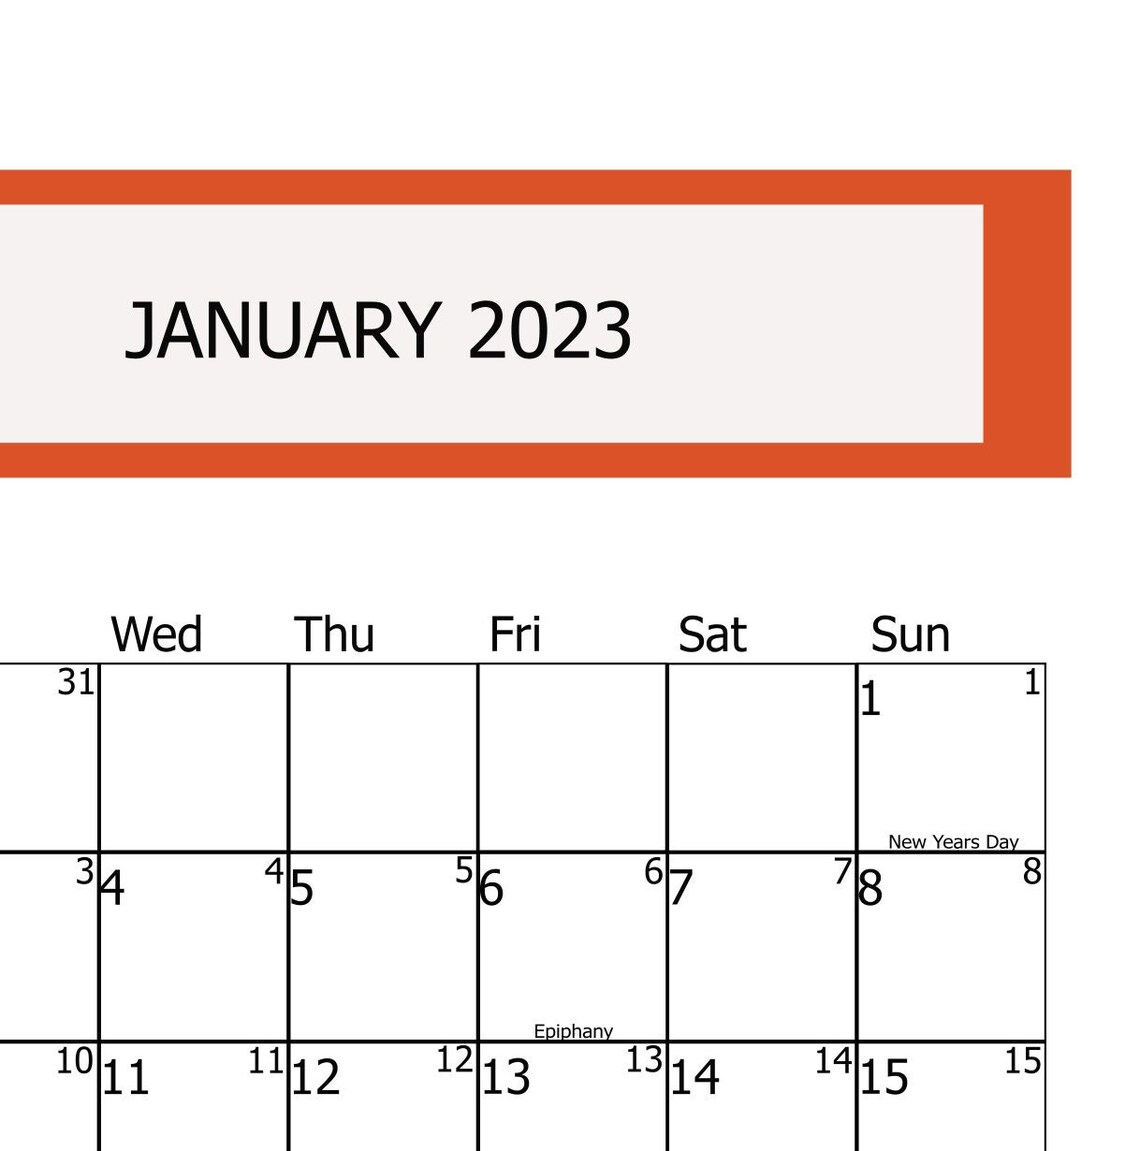 January 2023 Calendar2023 Calendars Calendar 2023 Digital | Etsy UK